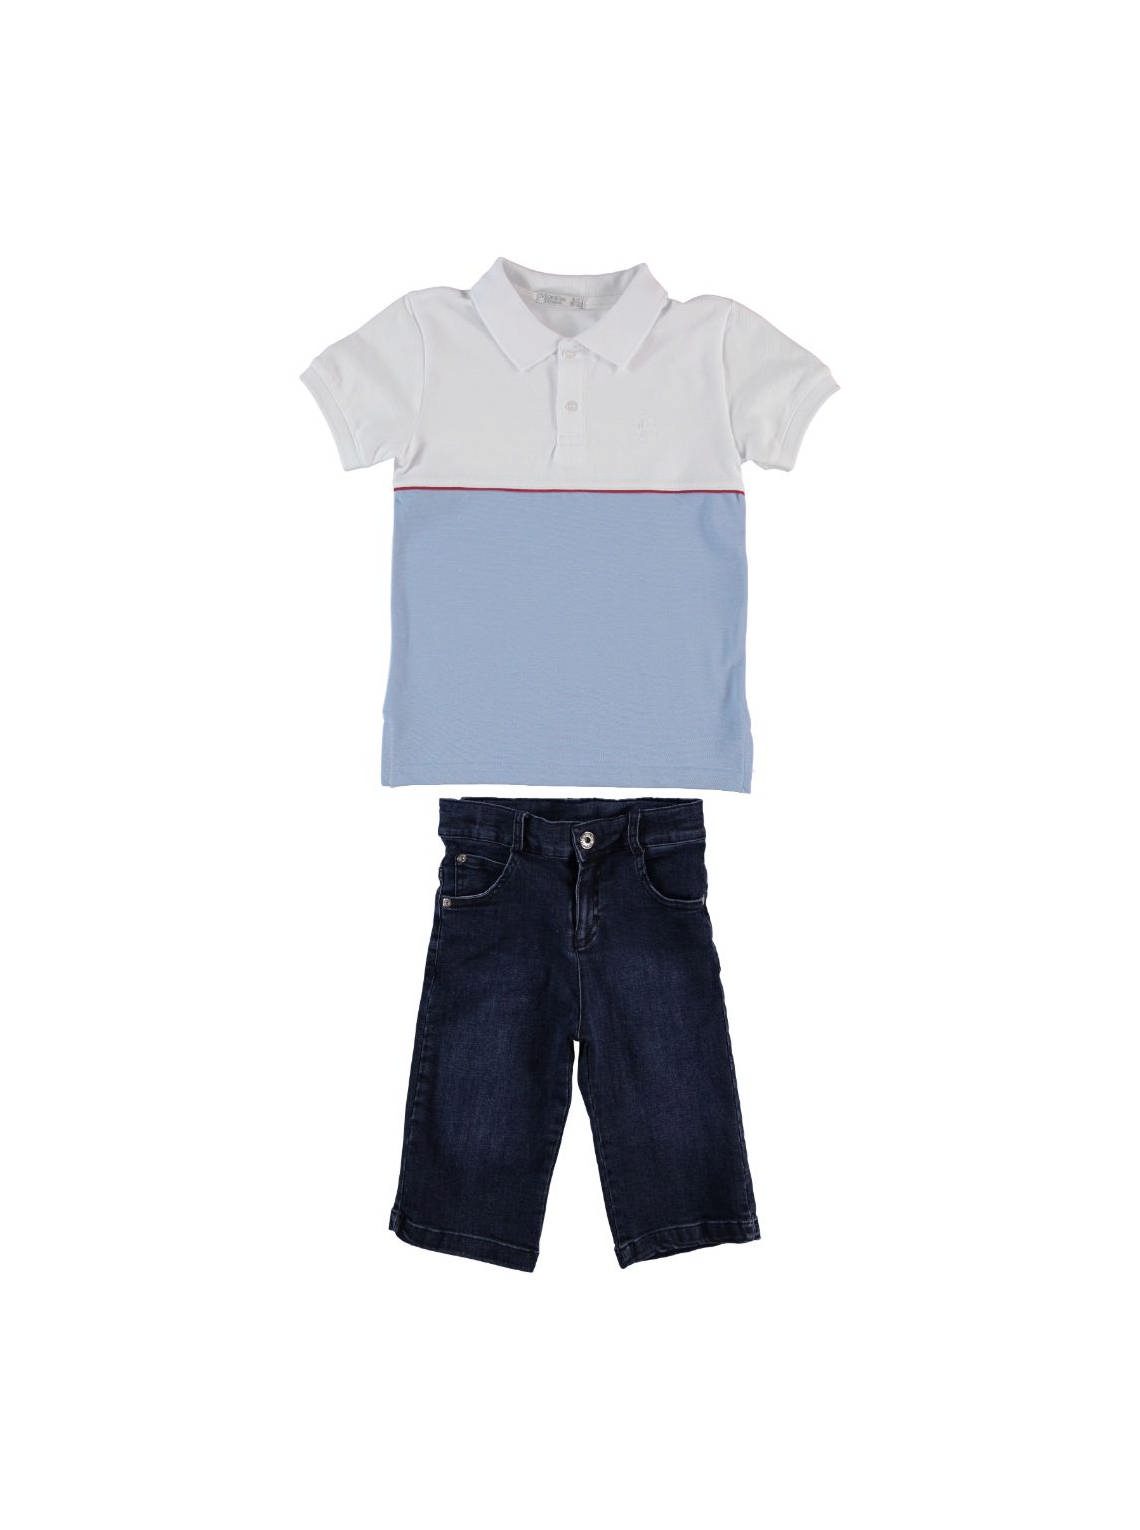 Exclusive Brand - Boy 2 Pieces Set ( Pants + Shirt ) / 6-7Y | 7-8Y | 8-9Y | 9-10Y - Kids Fashion Turkey